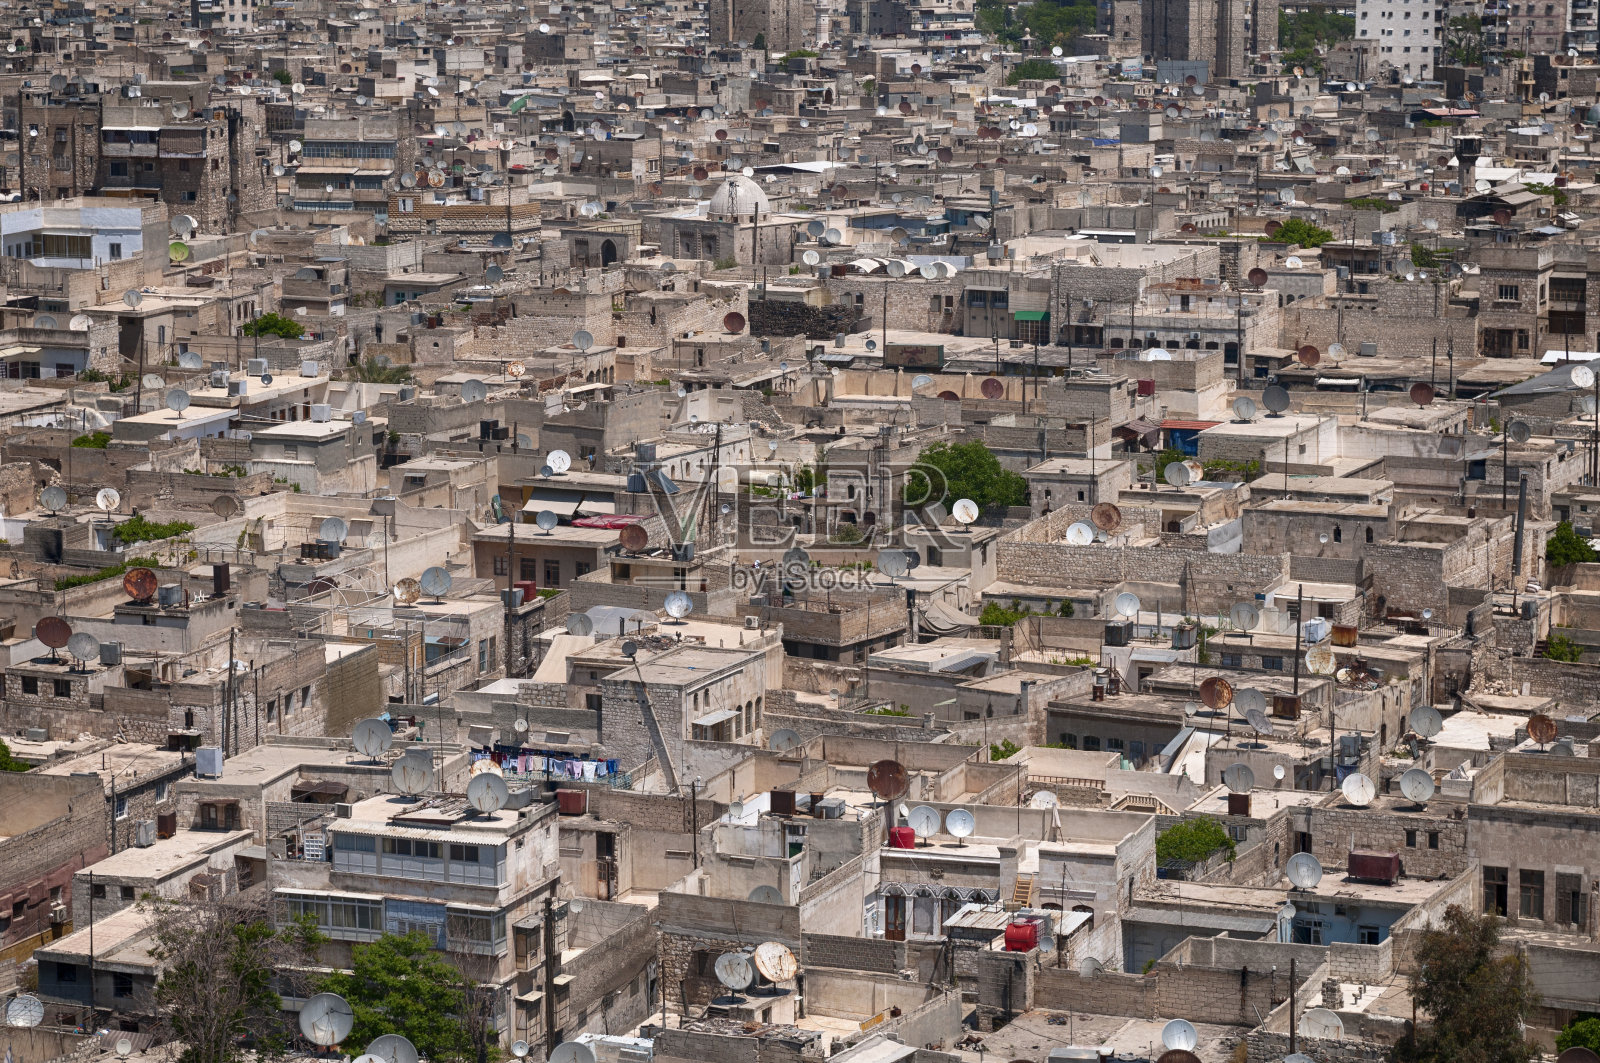 叙利亚阿勒颇的城市景观照片摄影图片